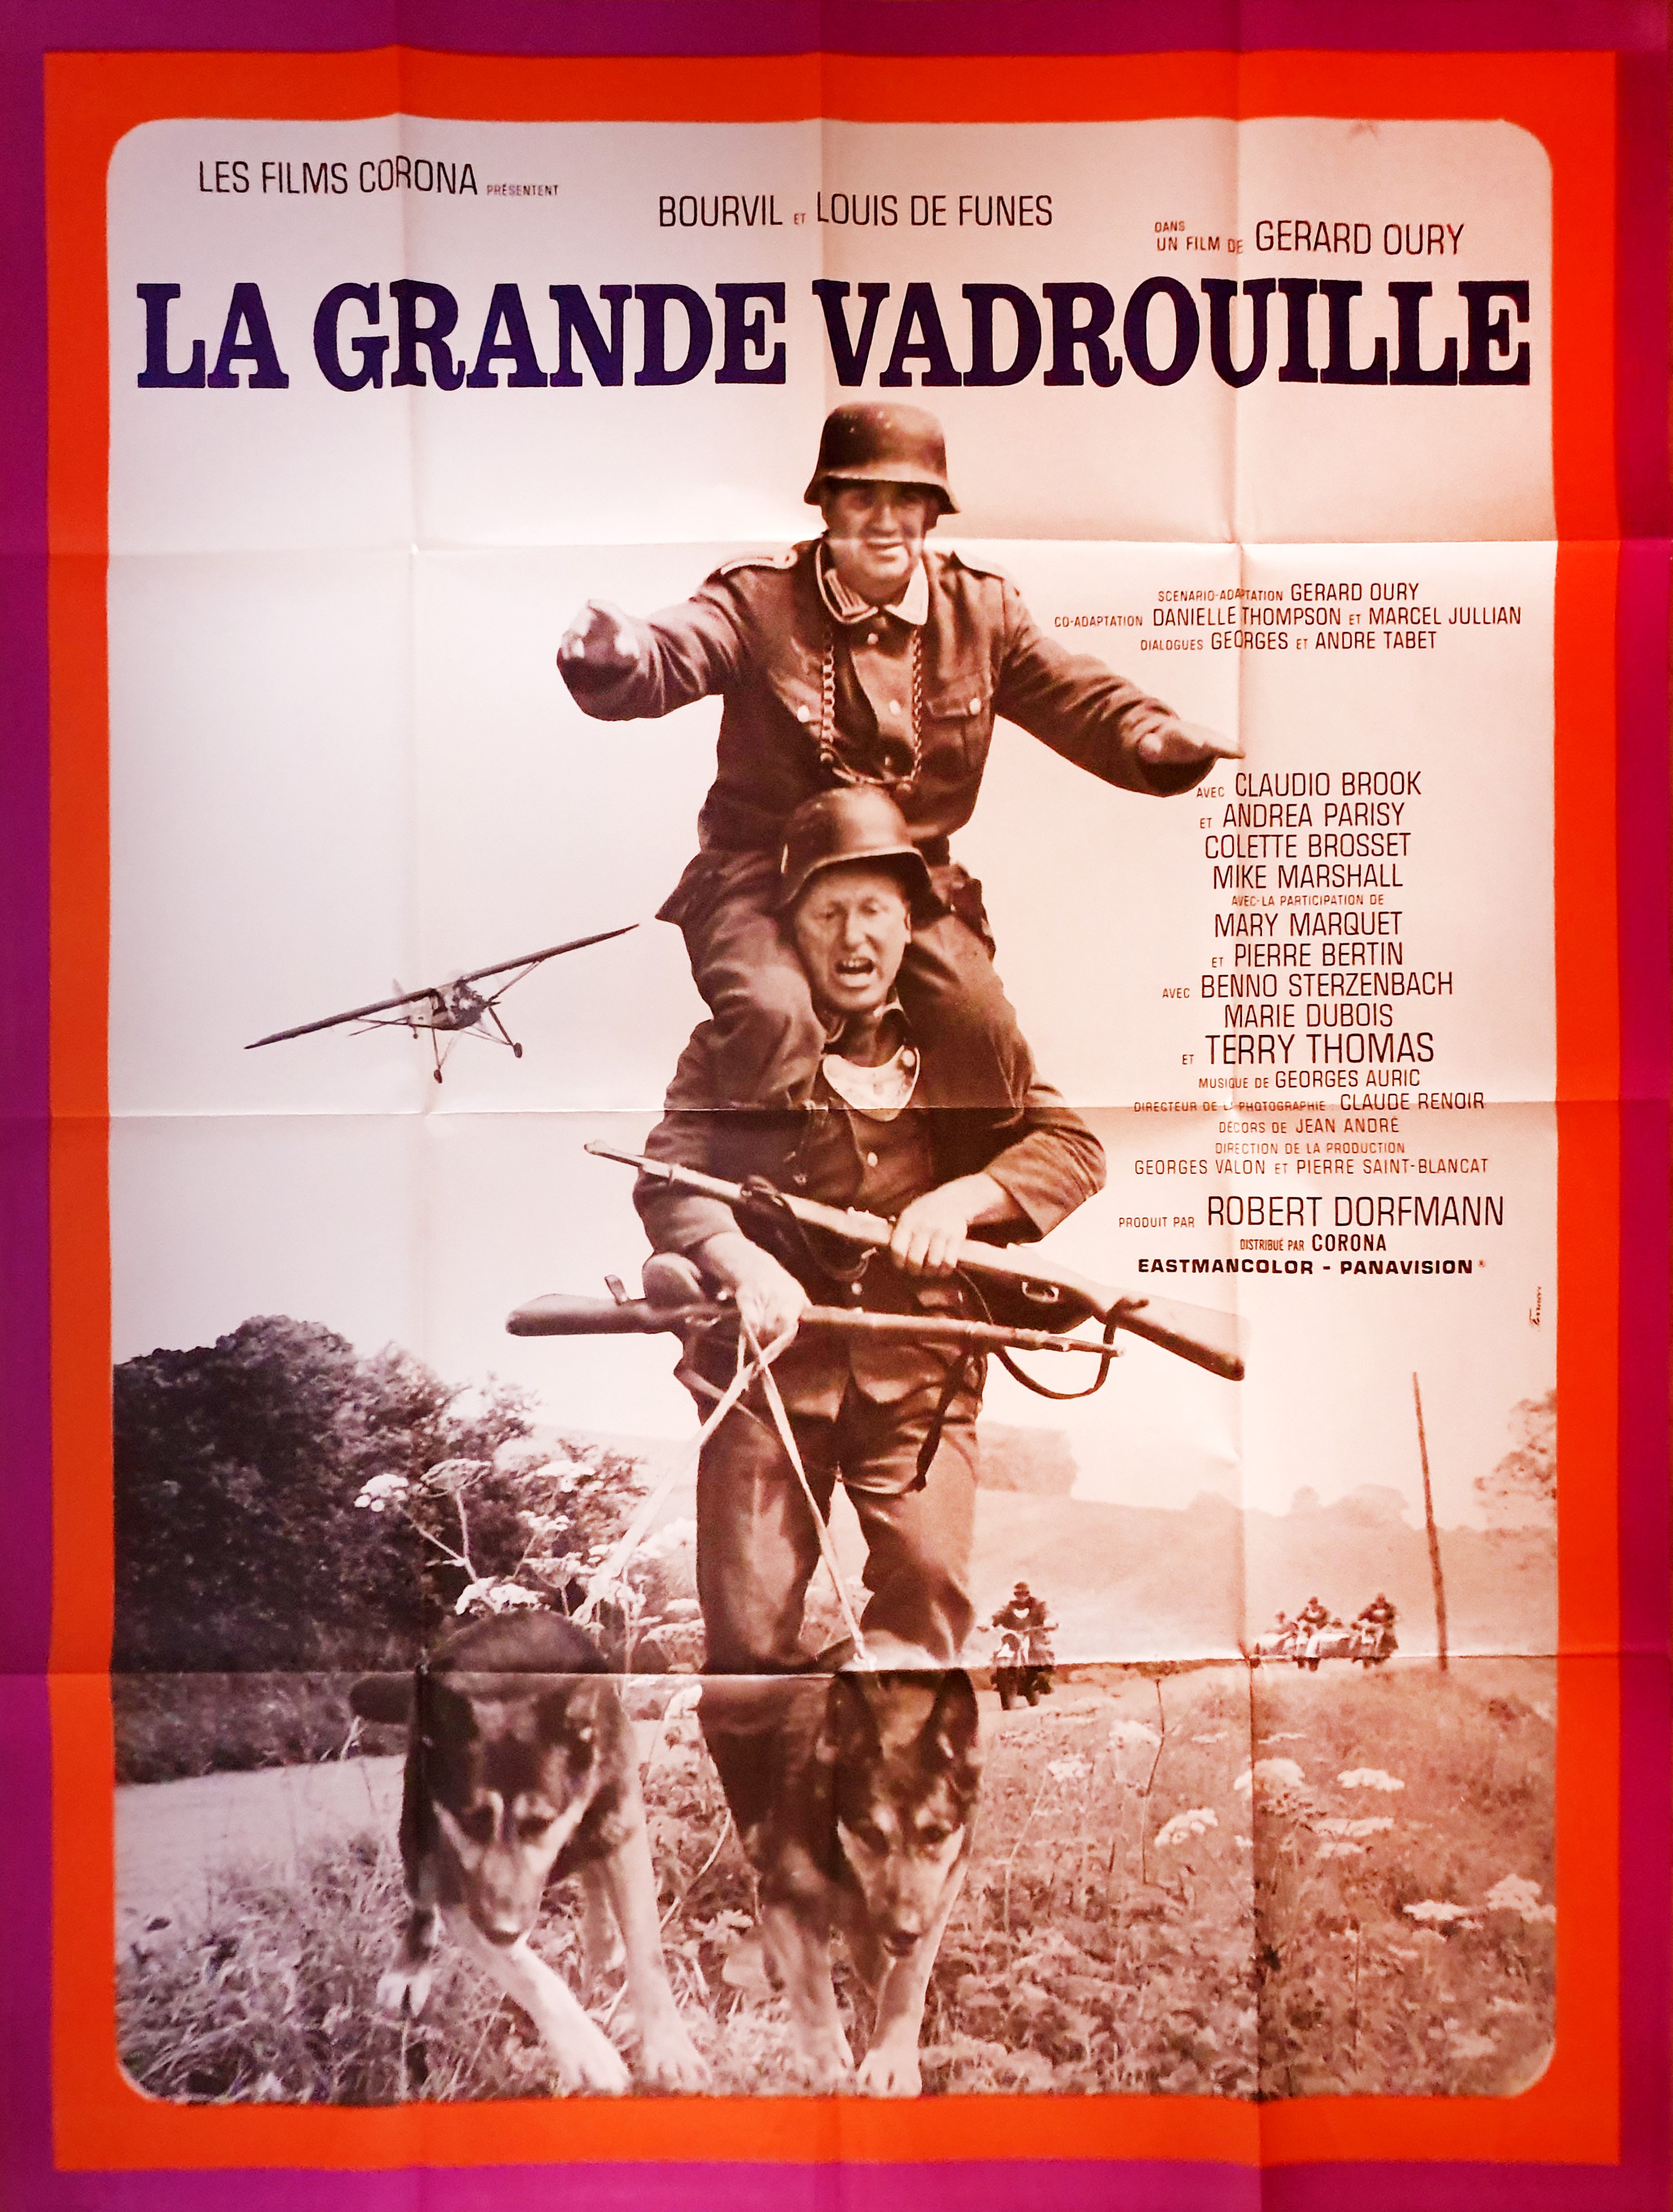 La grande vadrouille (1966)  La grande vadrouille, La grande vadrouille  film, Bourvil